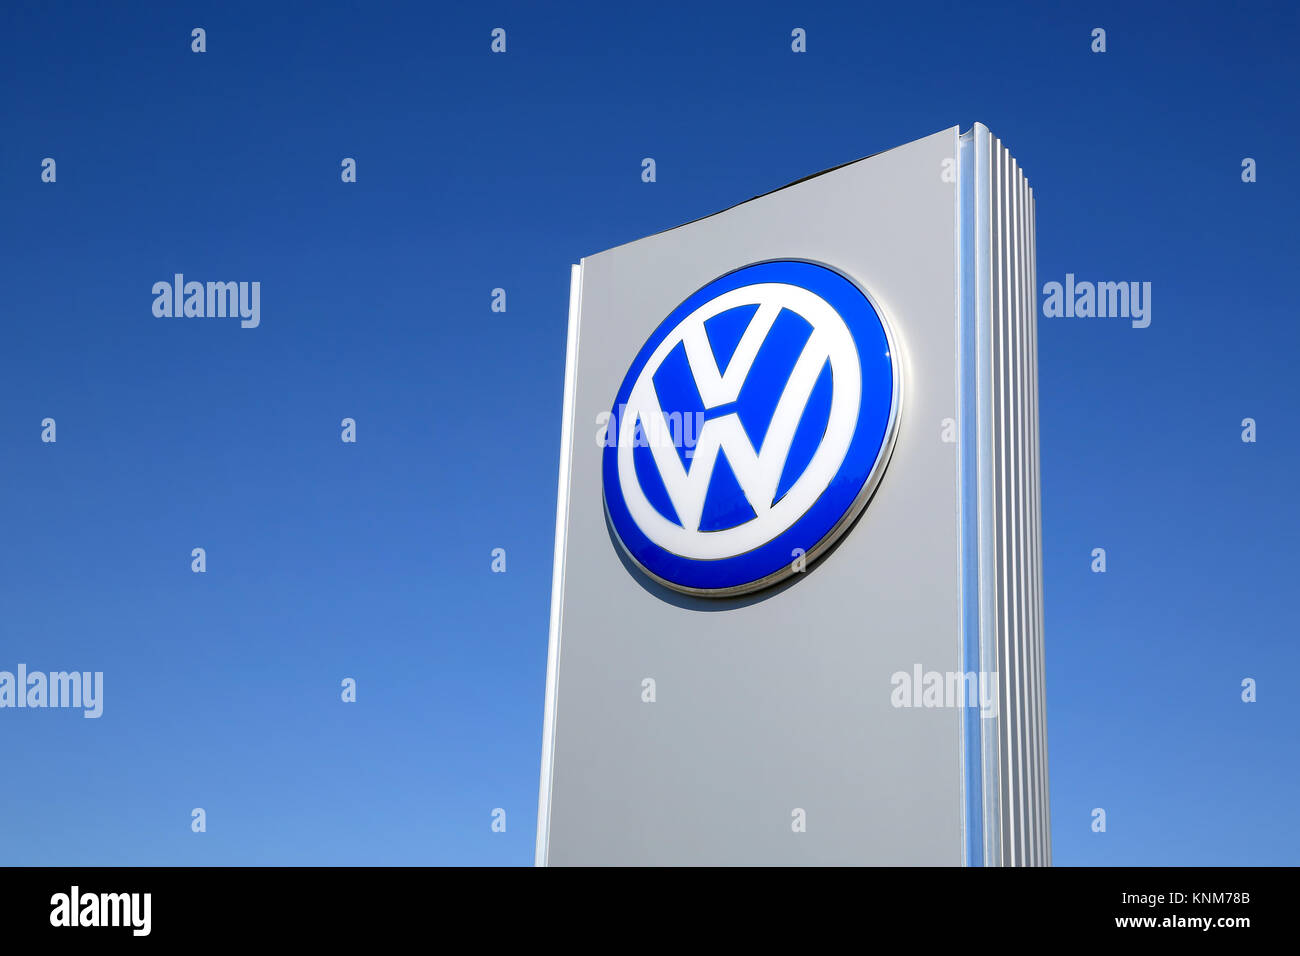 FORSSA, Finlandia - 17 Maggio 2014: Segno Volkswagen contro il cielo blu. Il gruppo Volkswagen consegnato oltre 9 milioni di veicoli nel periodo da gennaio a novembre Foto Stock